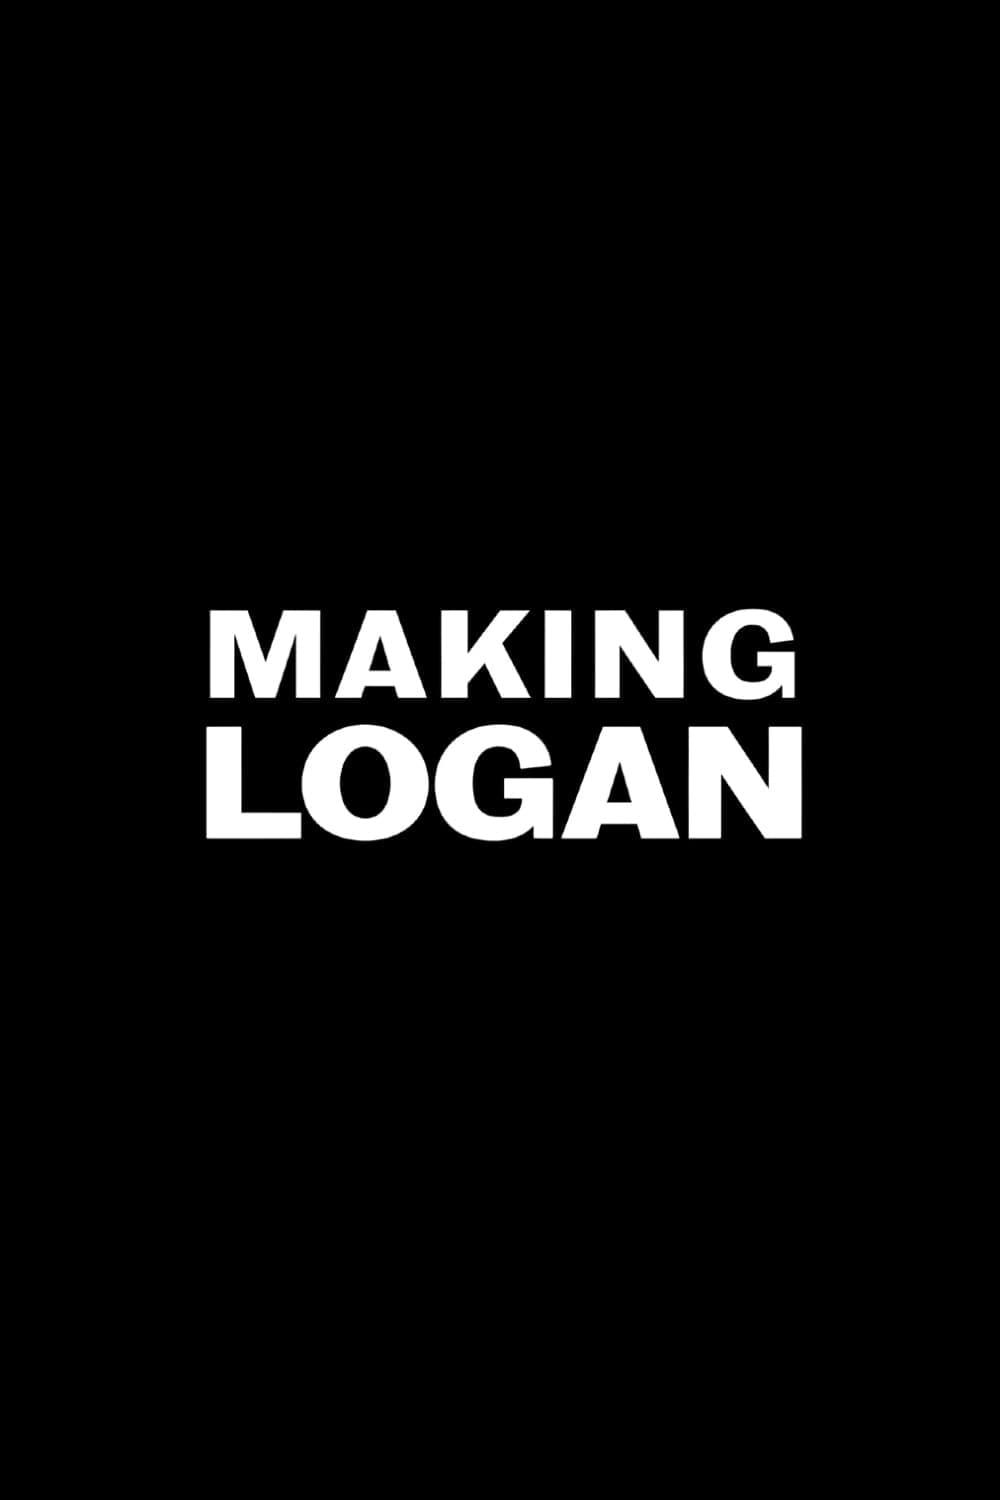 Making 'Logan' poster